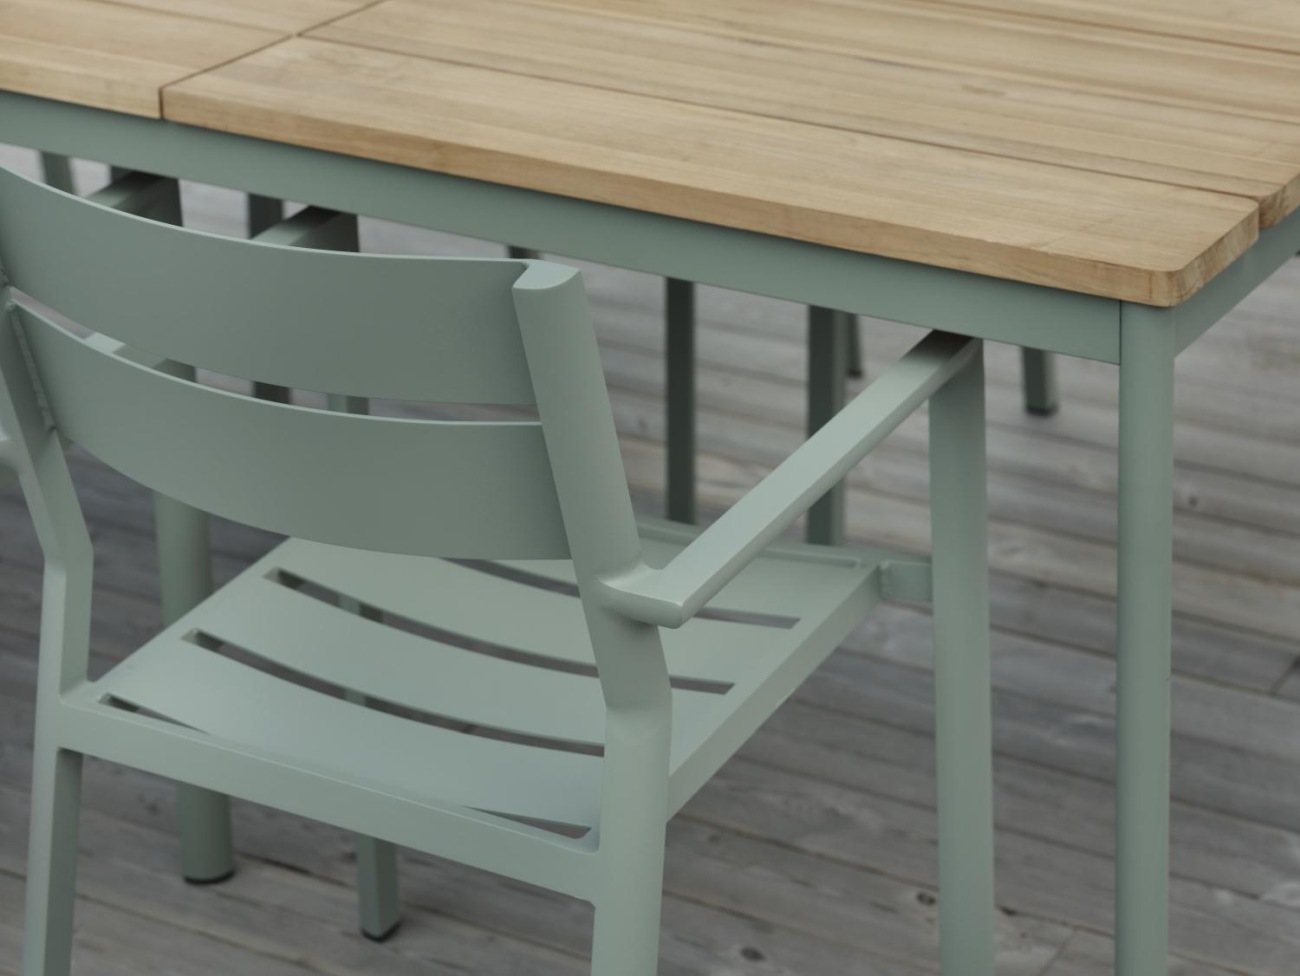 Der Gartenstuhl Delia überzeugt mit seinem modernen Design. Gefertigt wurde er aus Metall, welches einen hellgrünen Farbton besitzt. Das Gestell ist auch aus Metall und hat eine grüne Farbe. Die Sitzhöhe des Stuhls beträgt 43 cm.